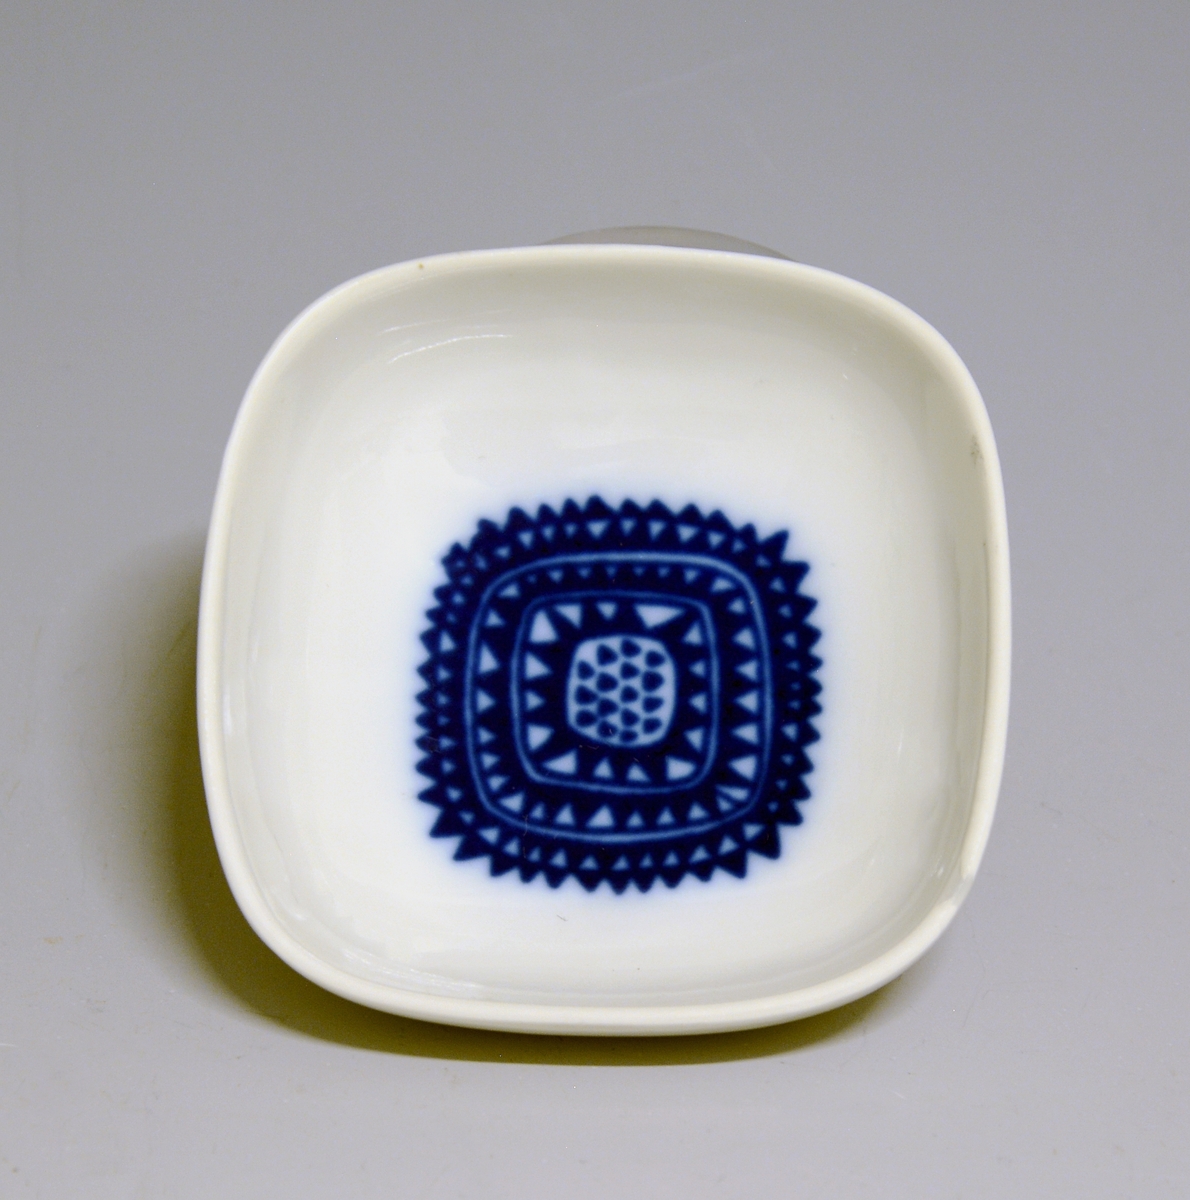 Prot: Askeskål av porselen. Samme som TGM-BM.1968:324 men dekoren er geometrisk mønster i mørk blå farge. Mrk: PP 67 og M.2259, D. 78107. Design Konrad Galaaen, dekor: Arne Lindaas.